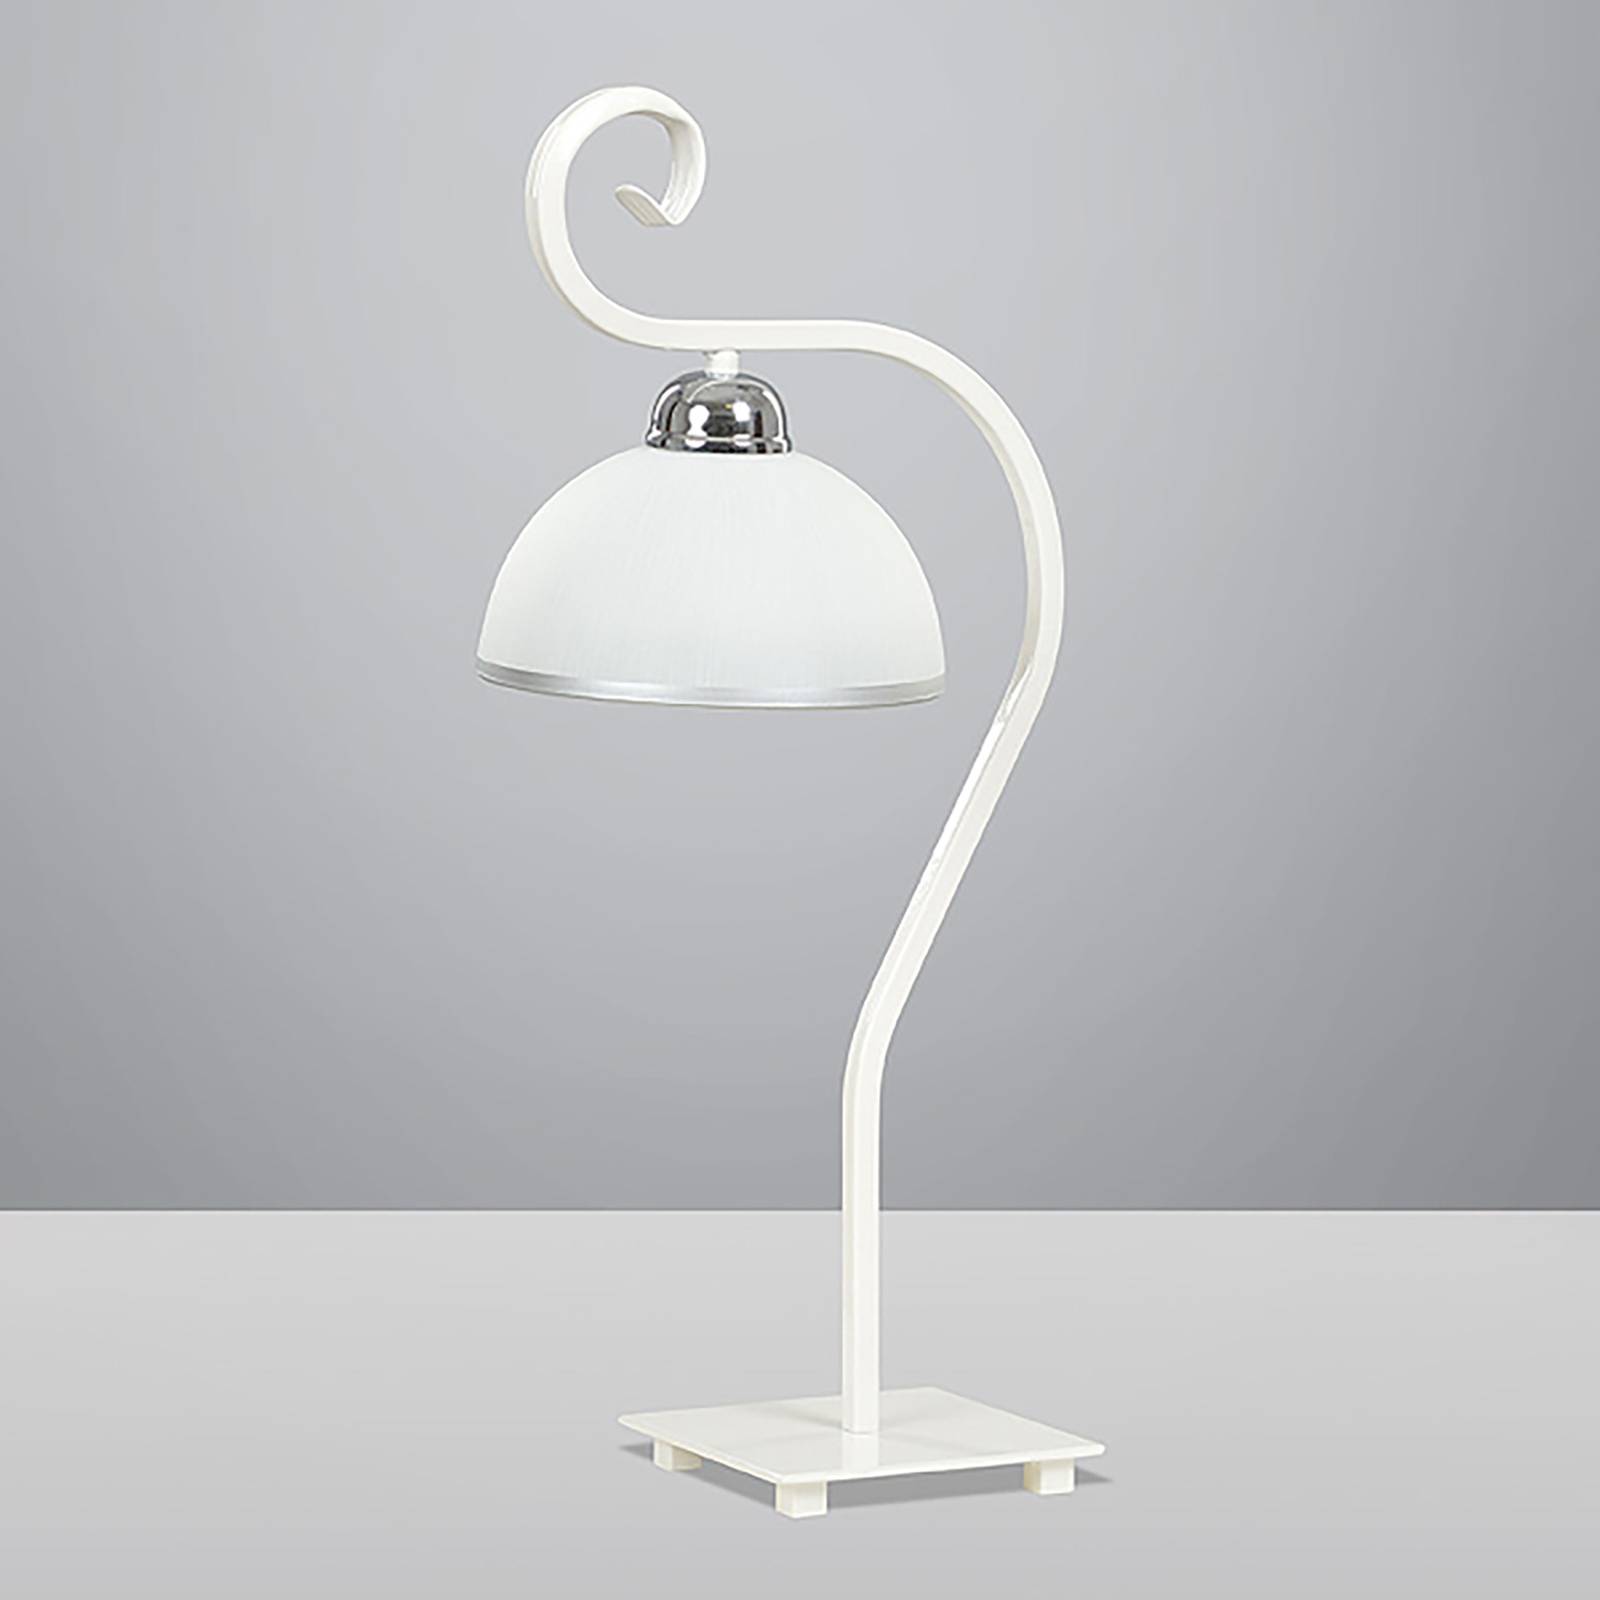 Asztali lámpa Wivara klasszikus design, fehér